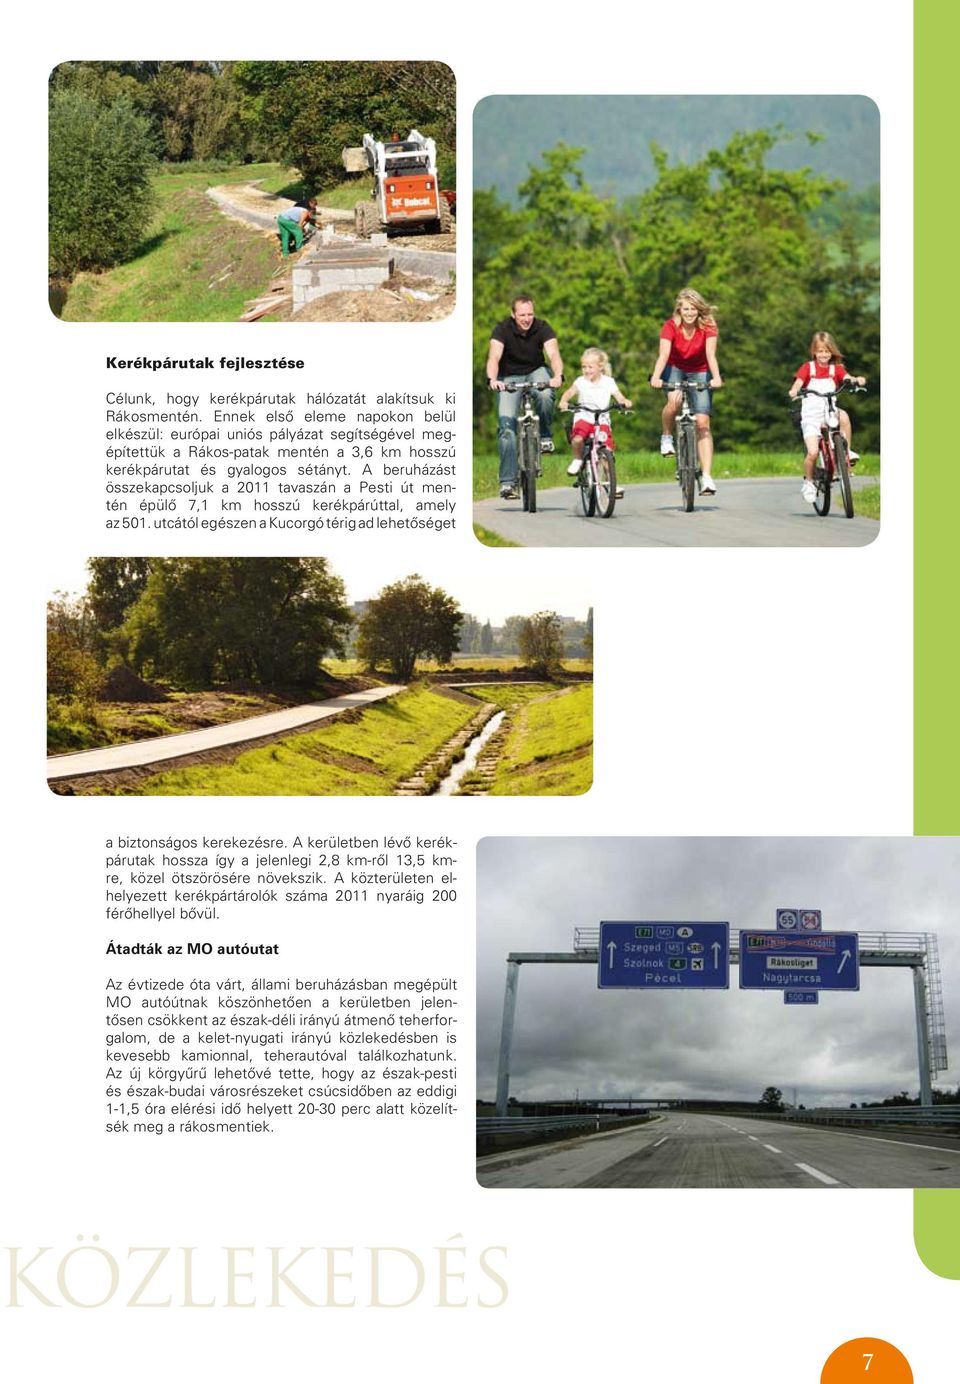 A beruházást összekapcsoljuk a 2011 tavaszán a Pesti út mentén épülô 7,1 km hosszú kerékpárúttal, amely az 501. utcától egészen a Kucorgó térig ad lehetôséget a biztonságos kerekezésre.